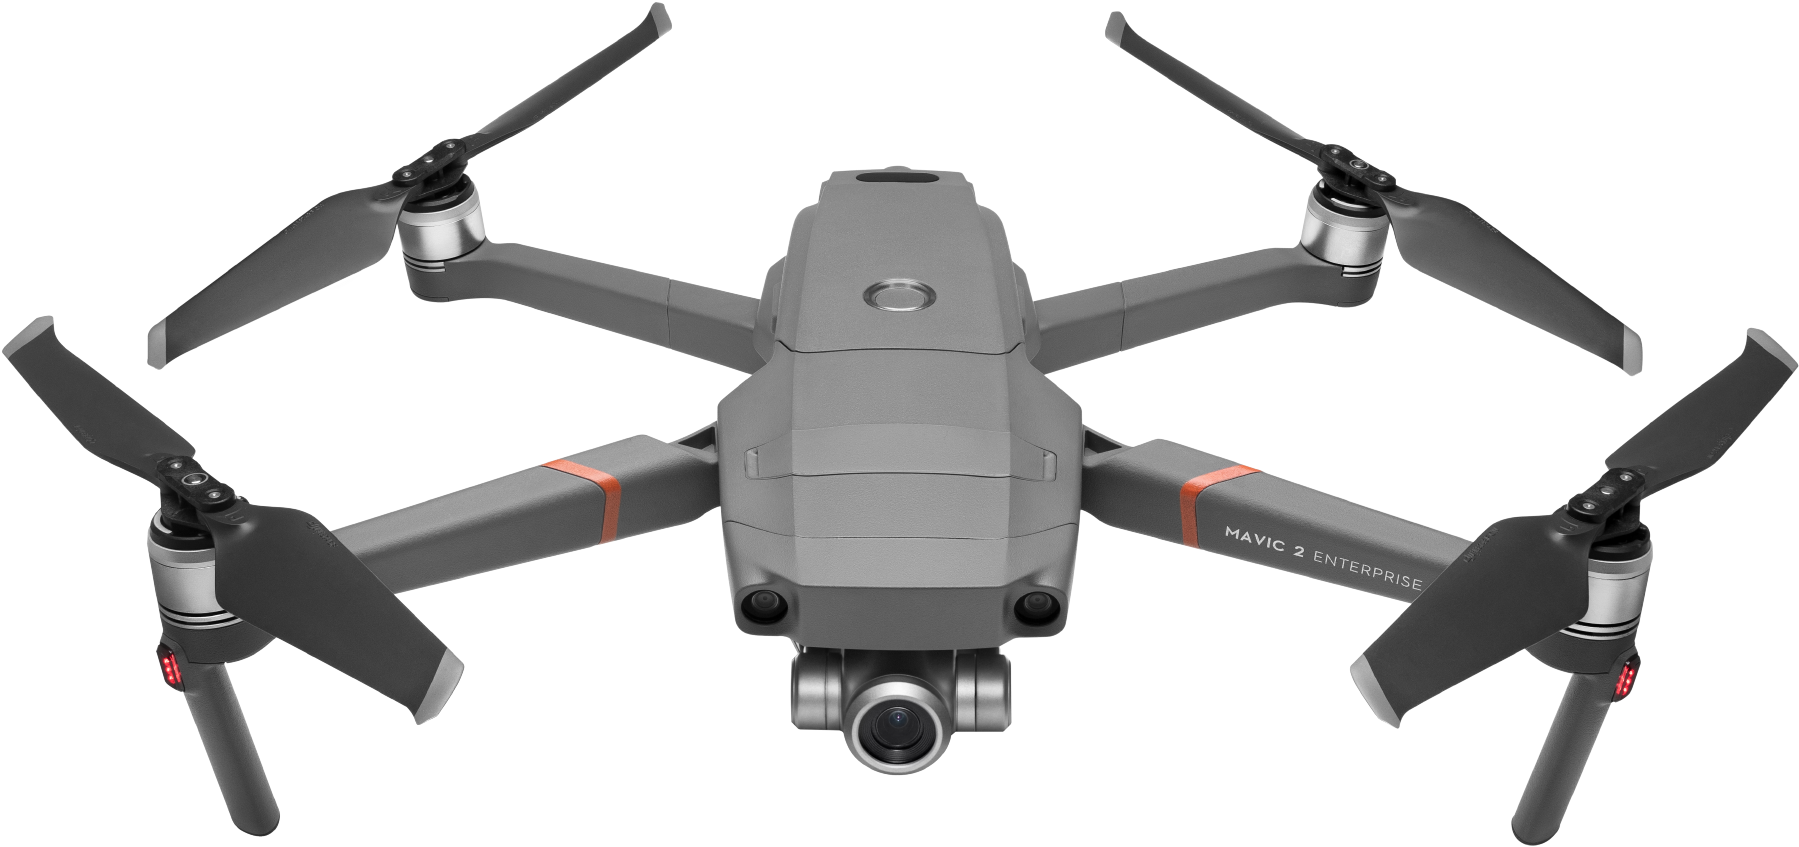 Mavic 2 Enterprise Zoom - DroneLabs.ca